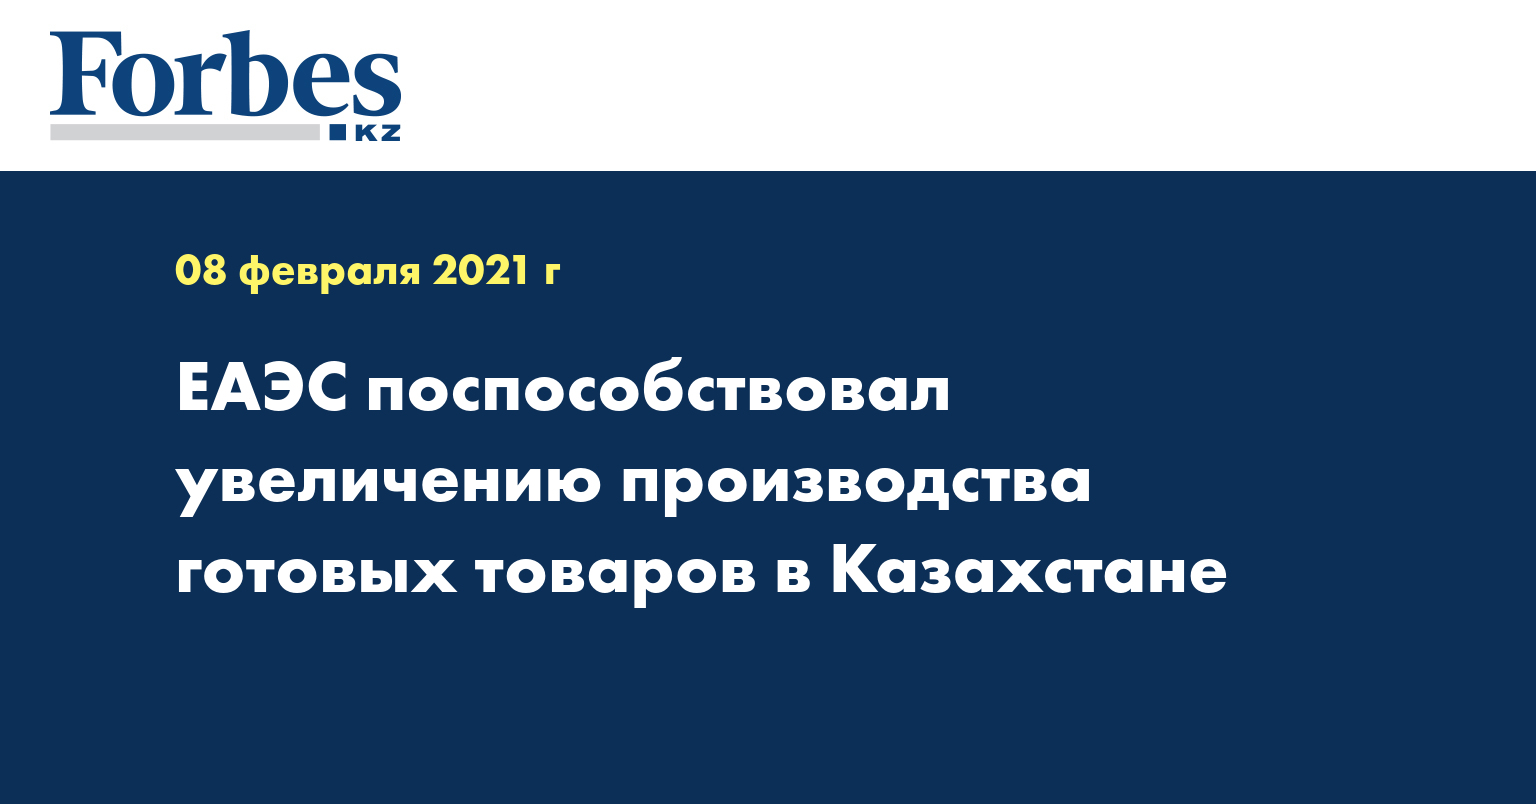 ЕАЭС поспособствовал увеличению производства готовых товаров в Казахстане